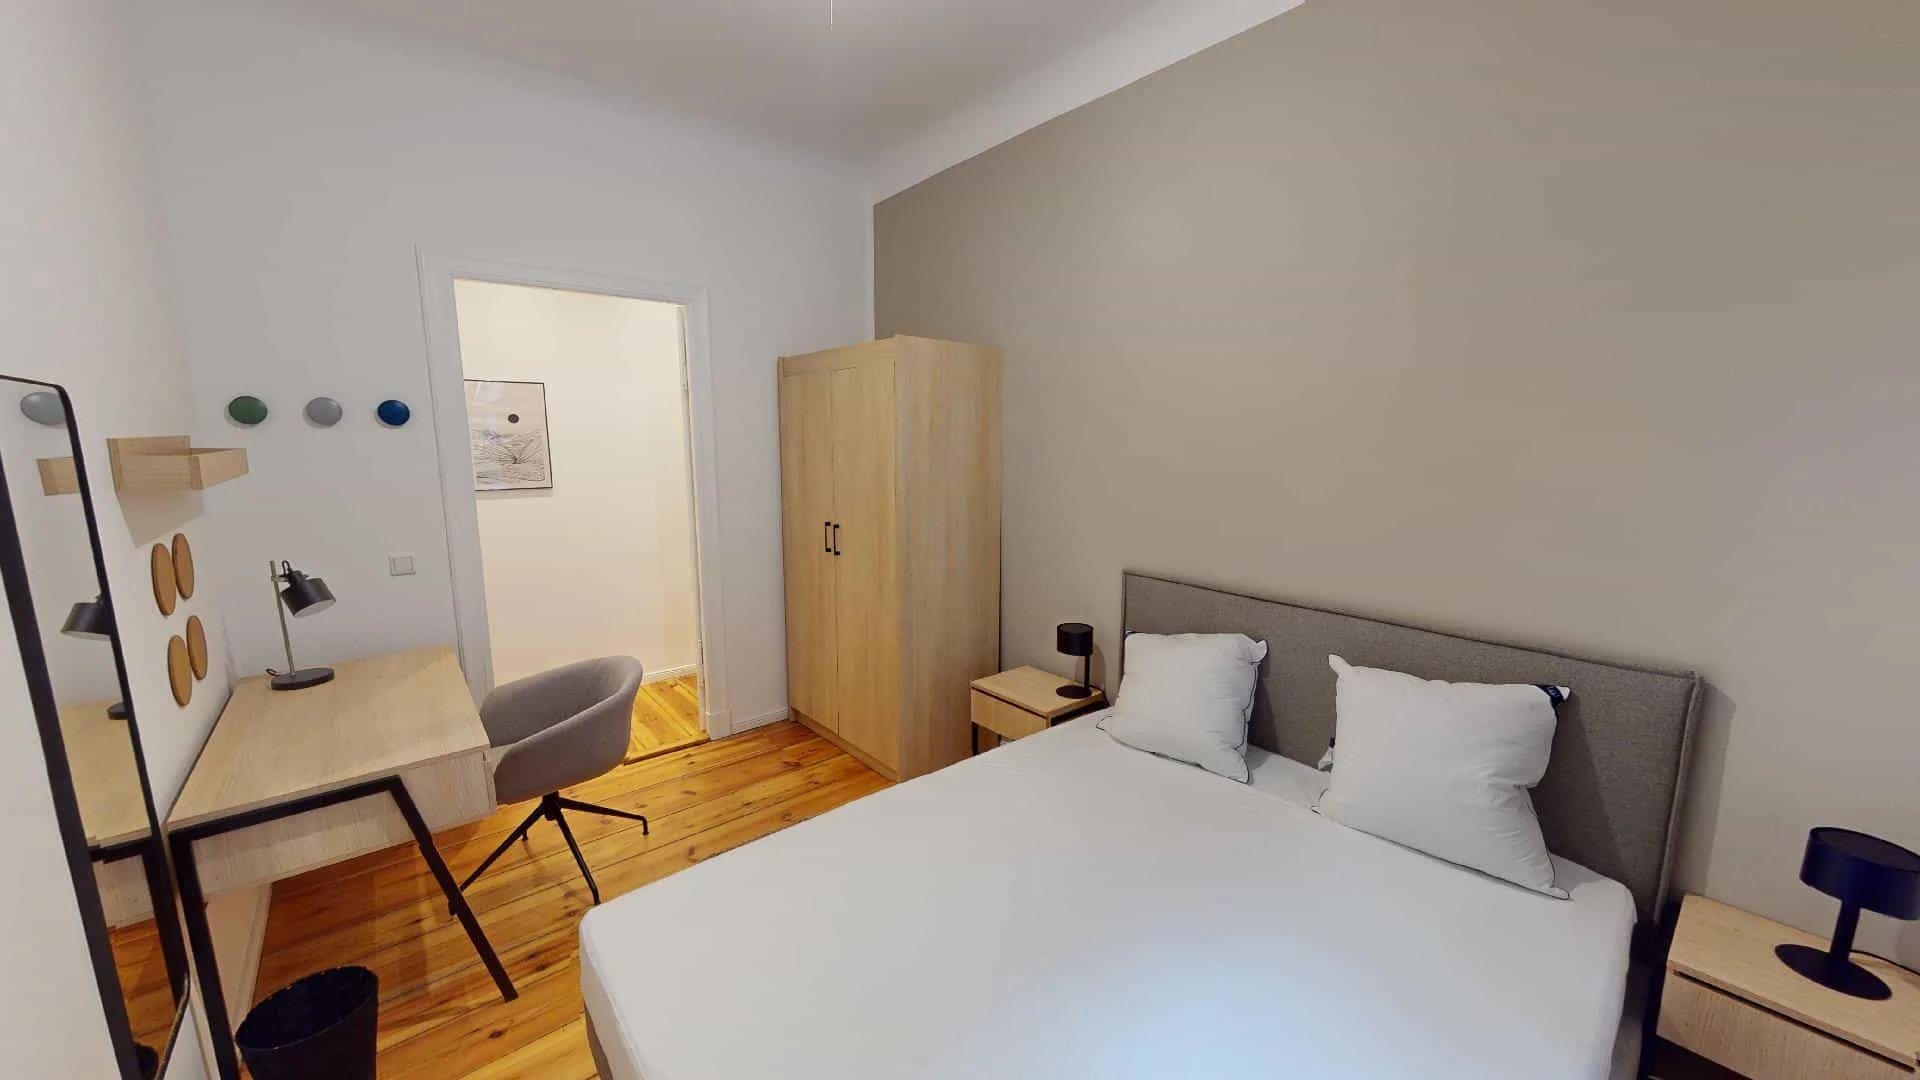 Berlin de çift kişilik yataklı kiralık oda